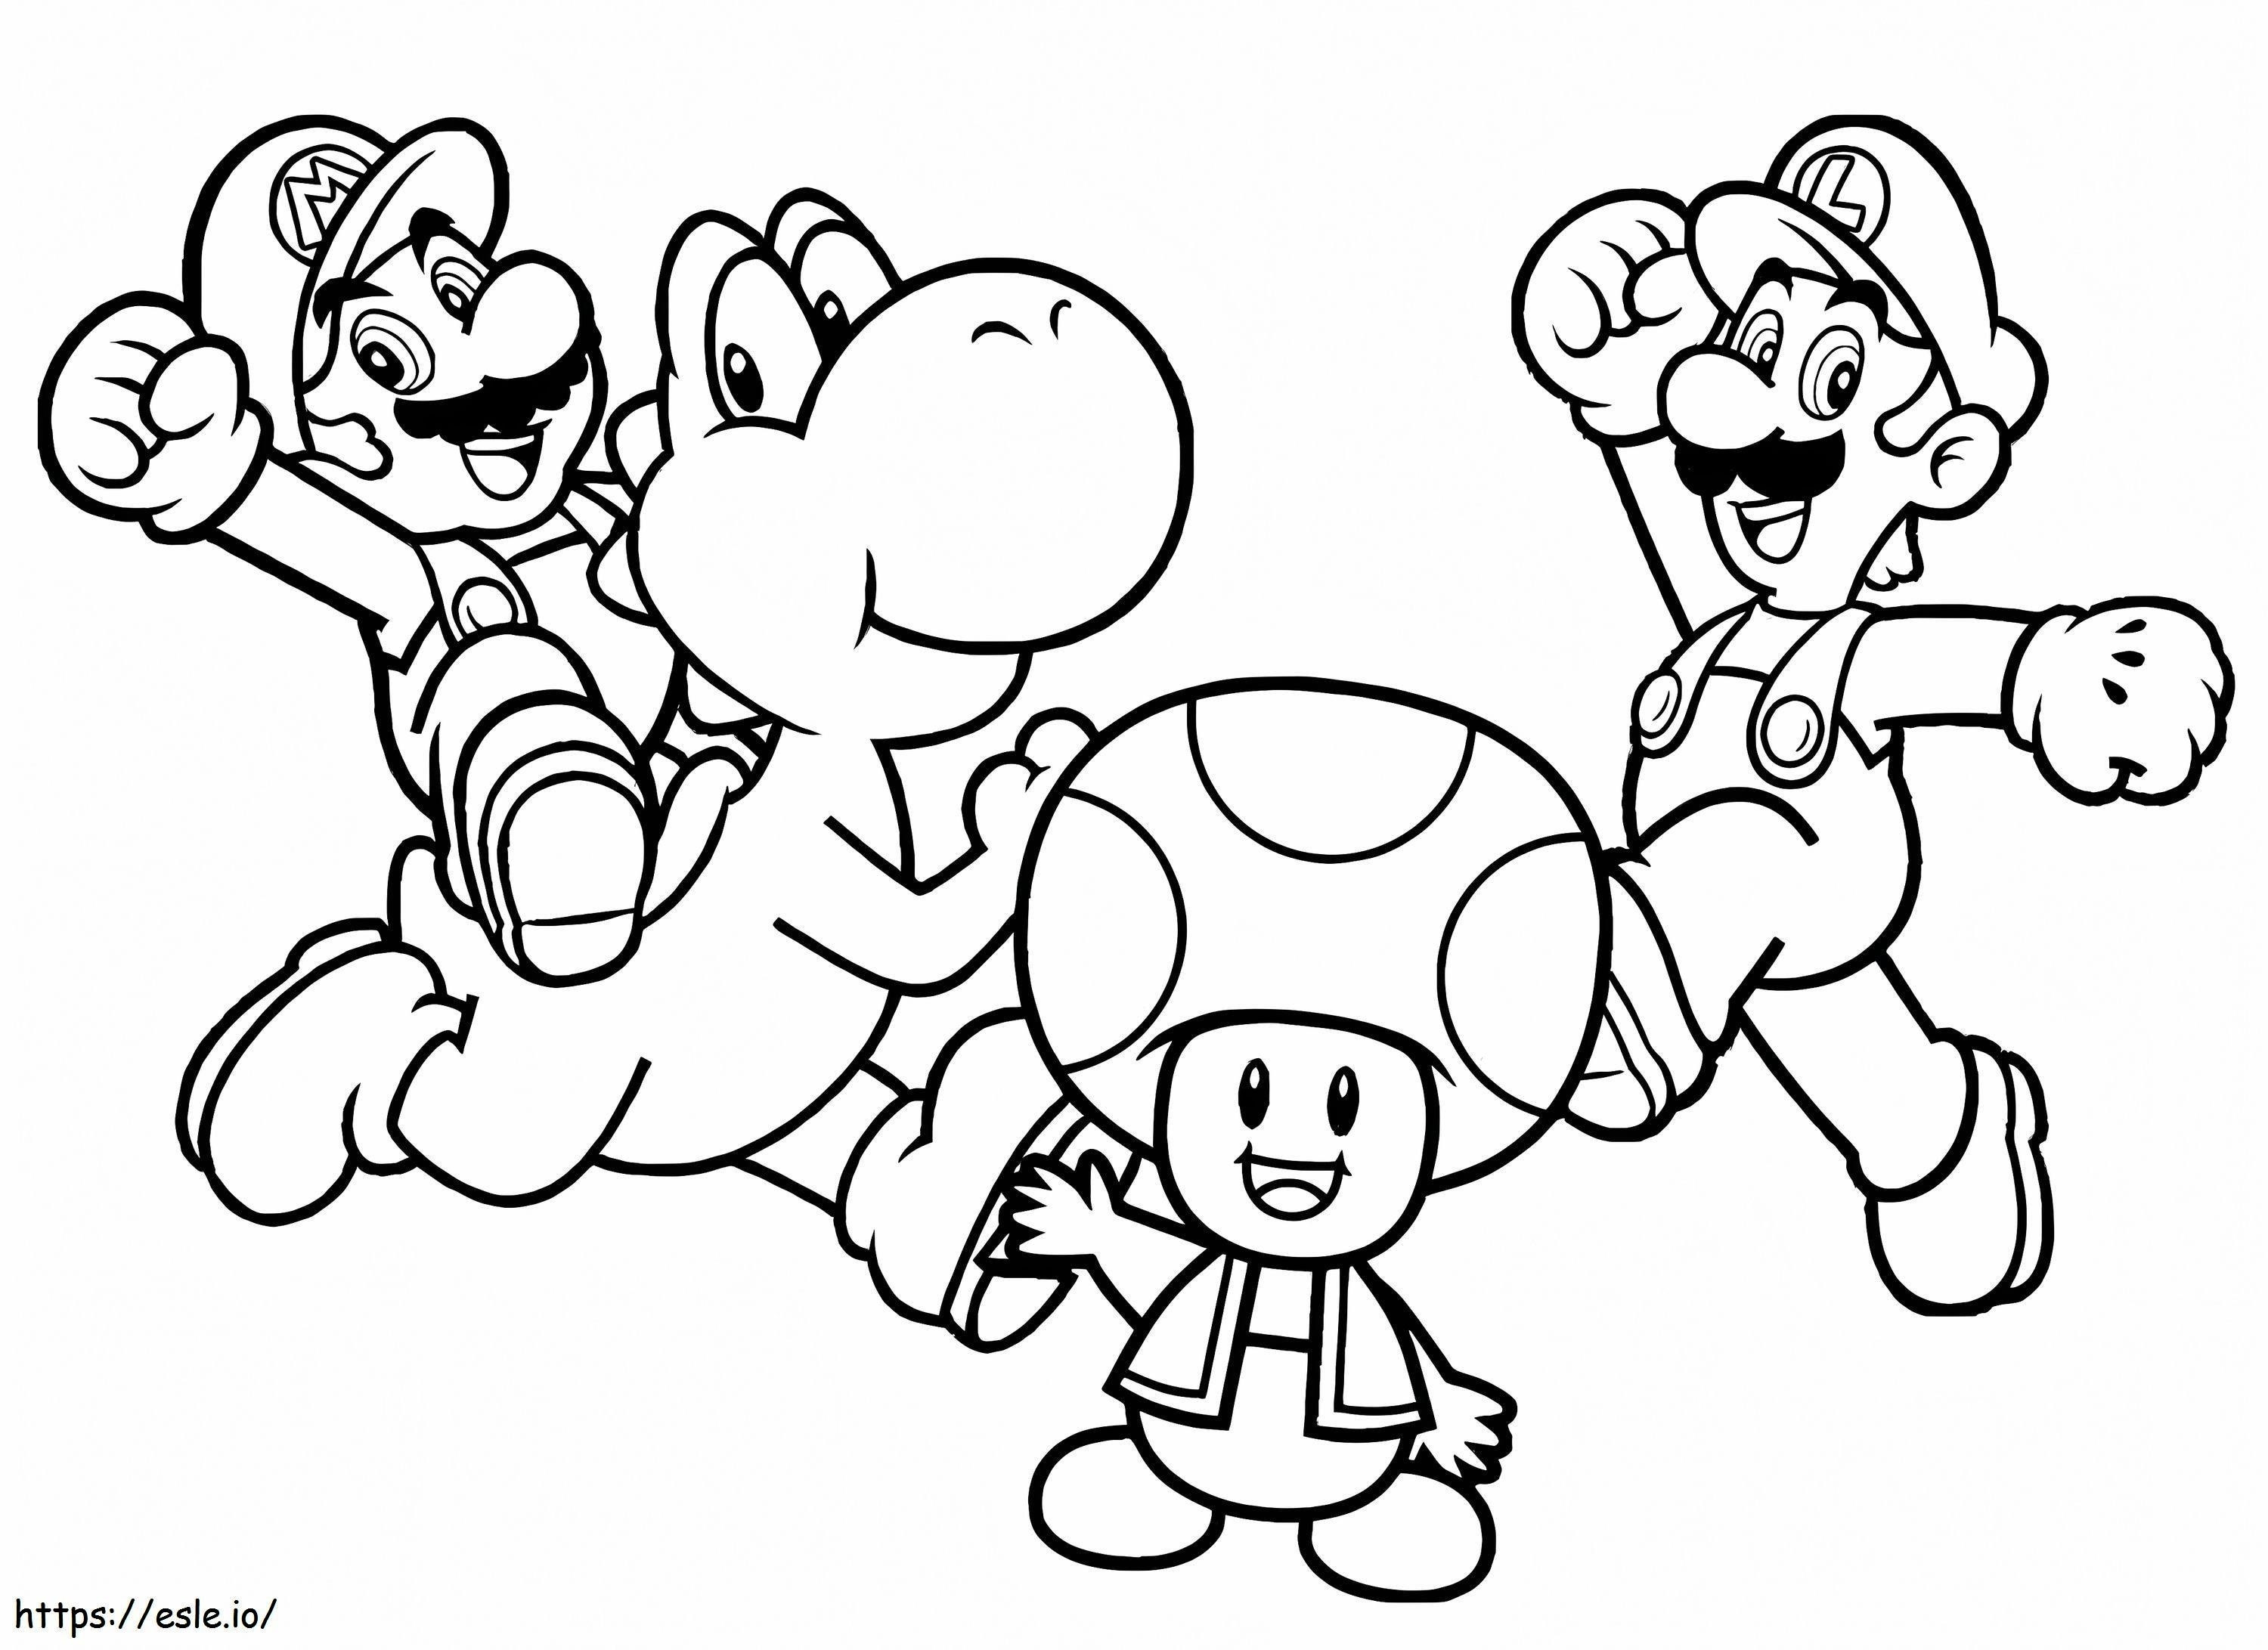 Personaje Mario de colorat